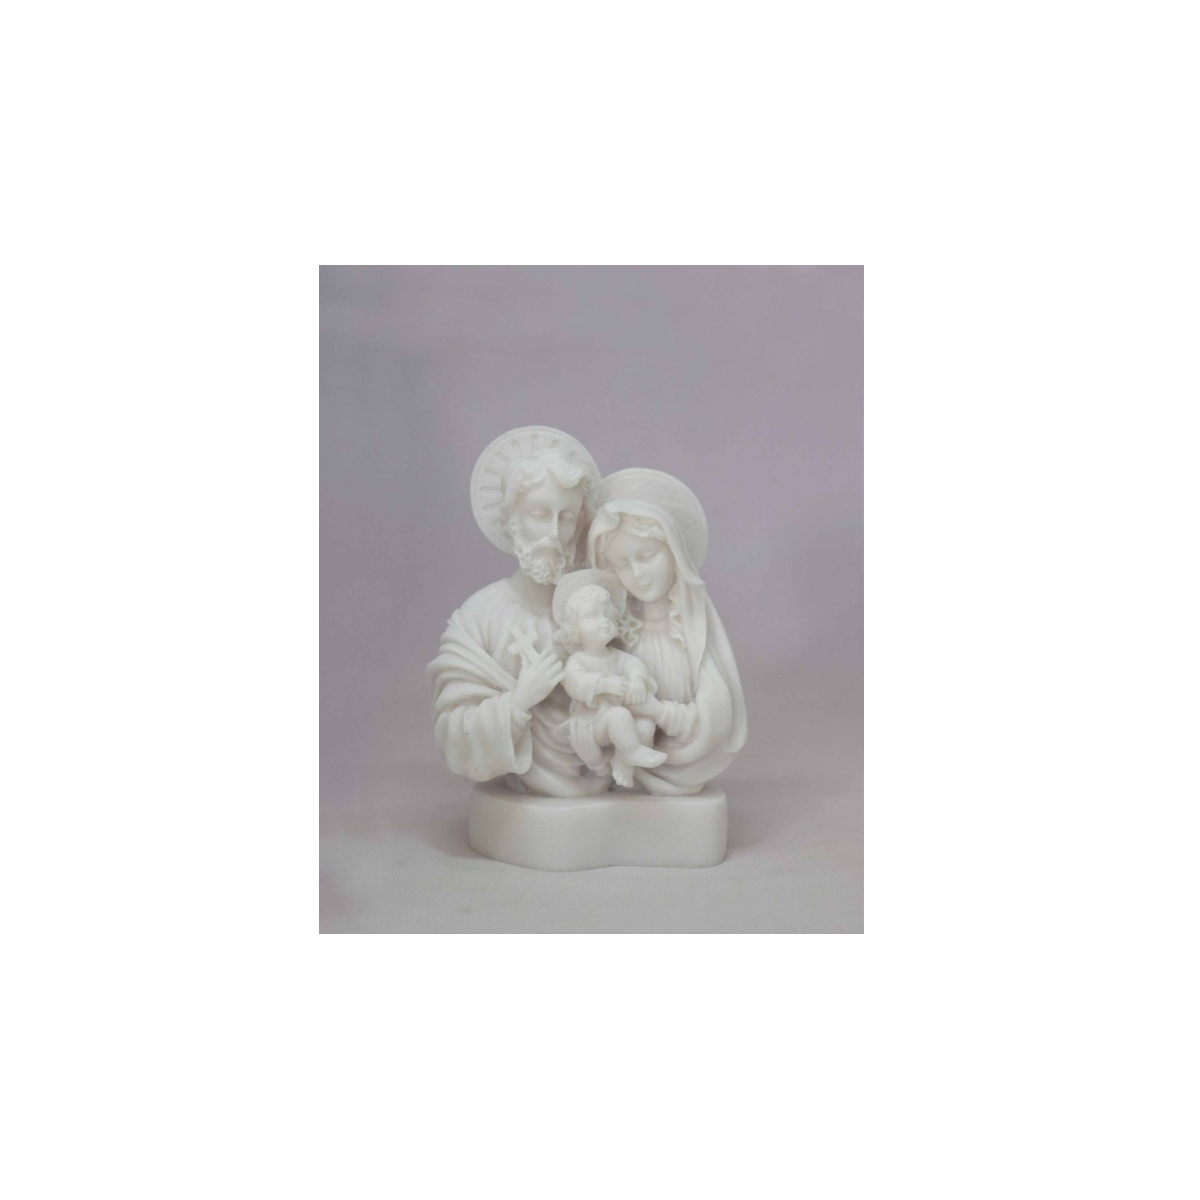 Statue de la Sainte famille en albâtre